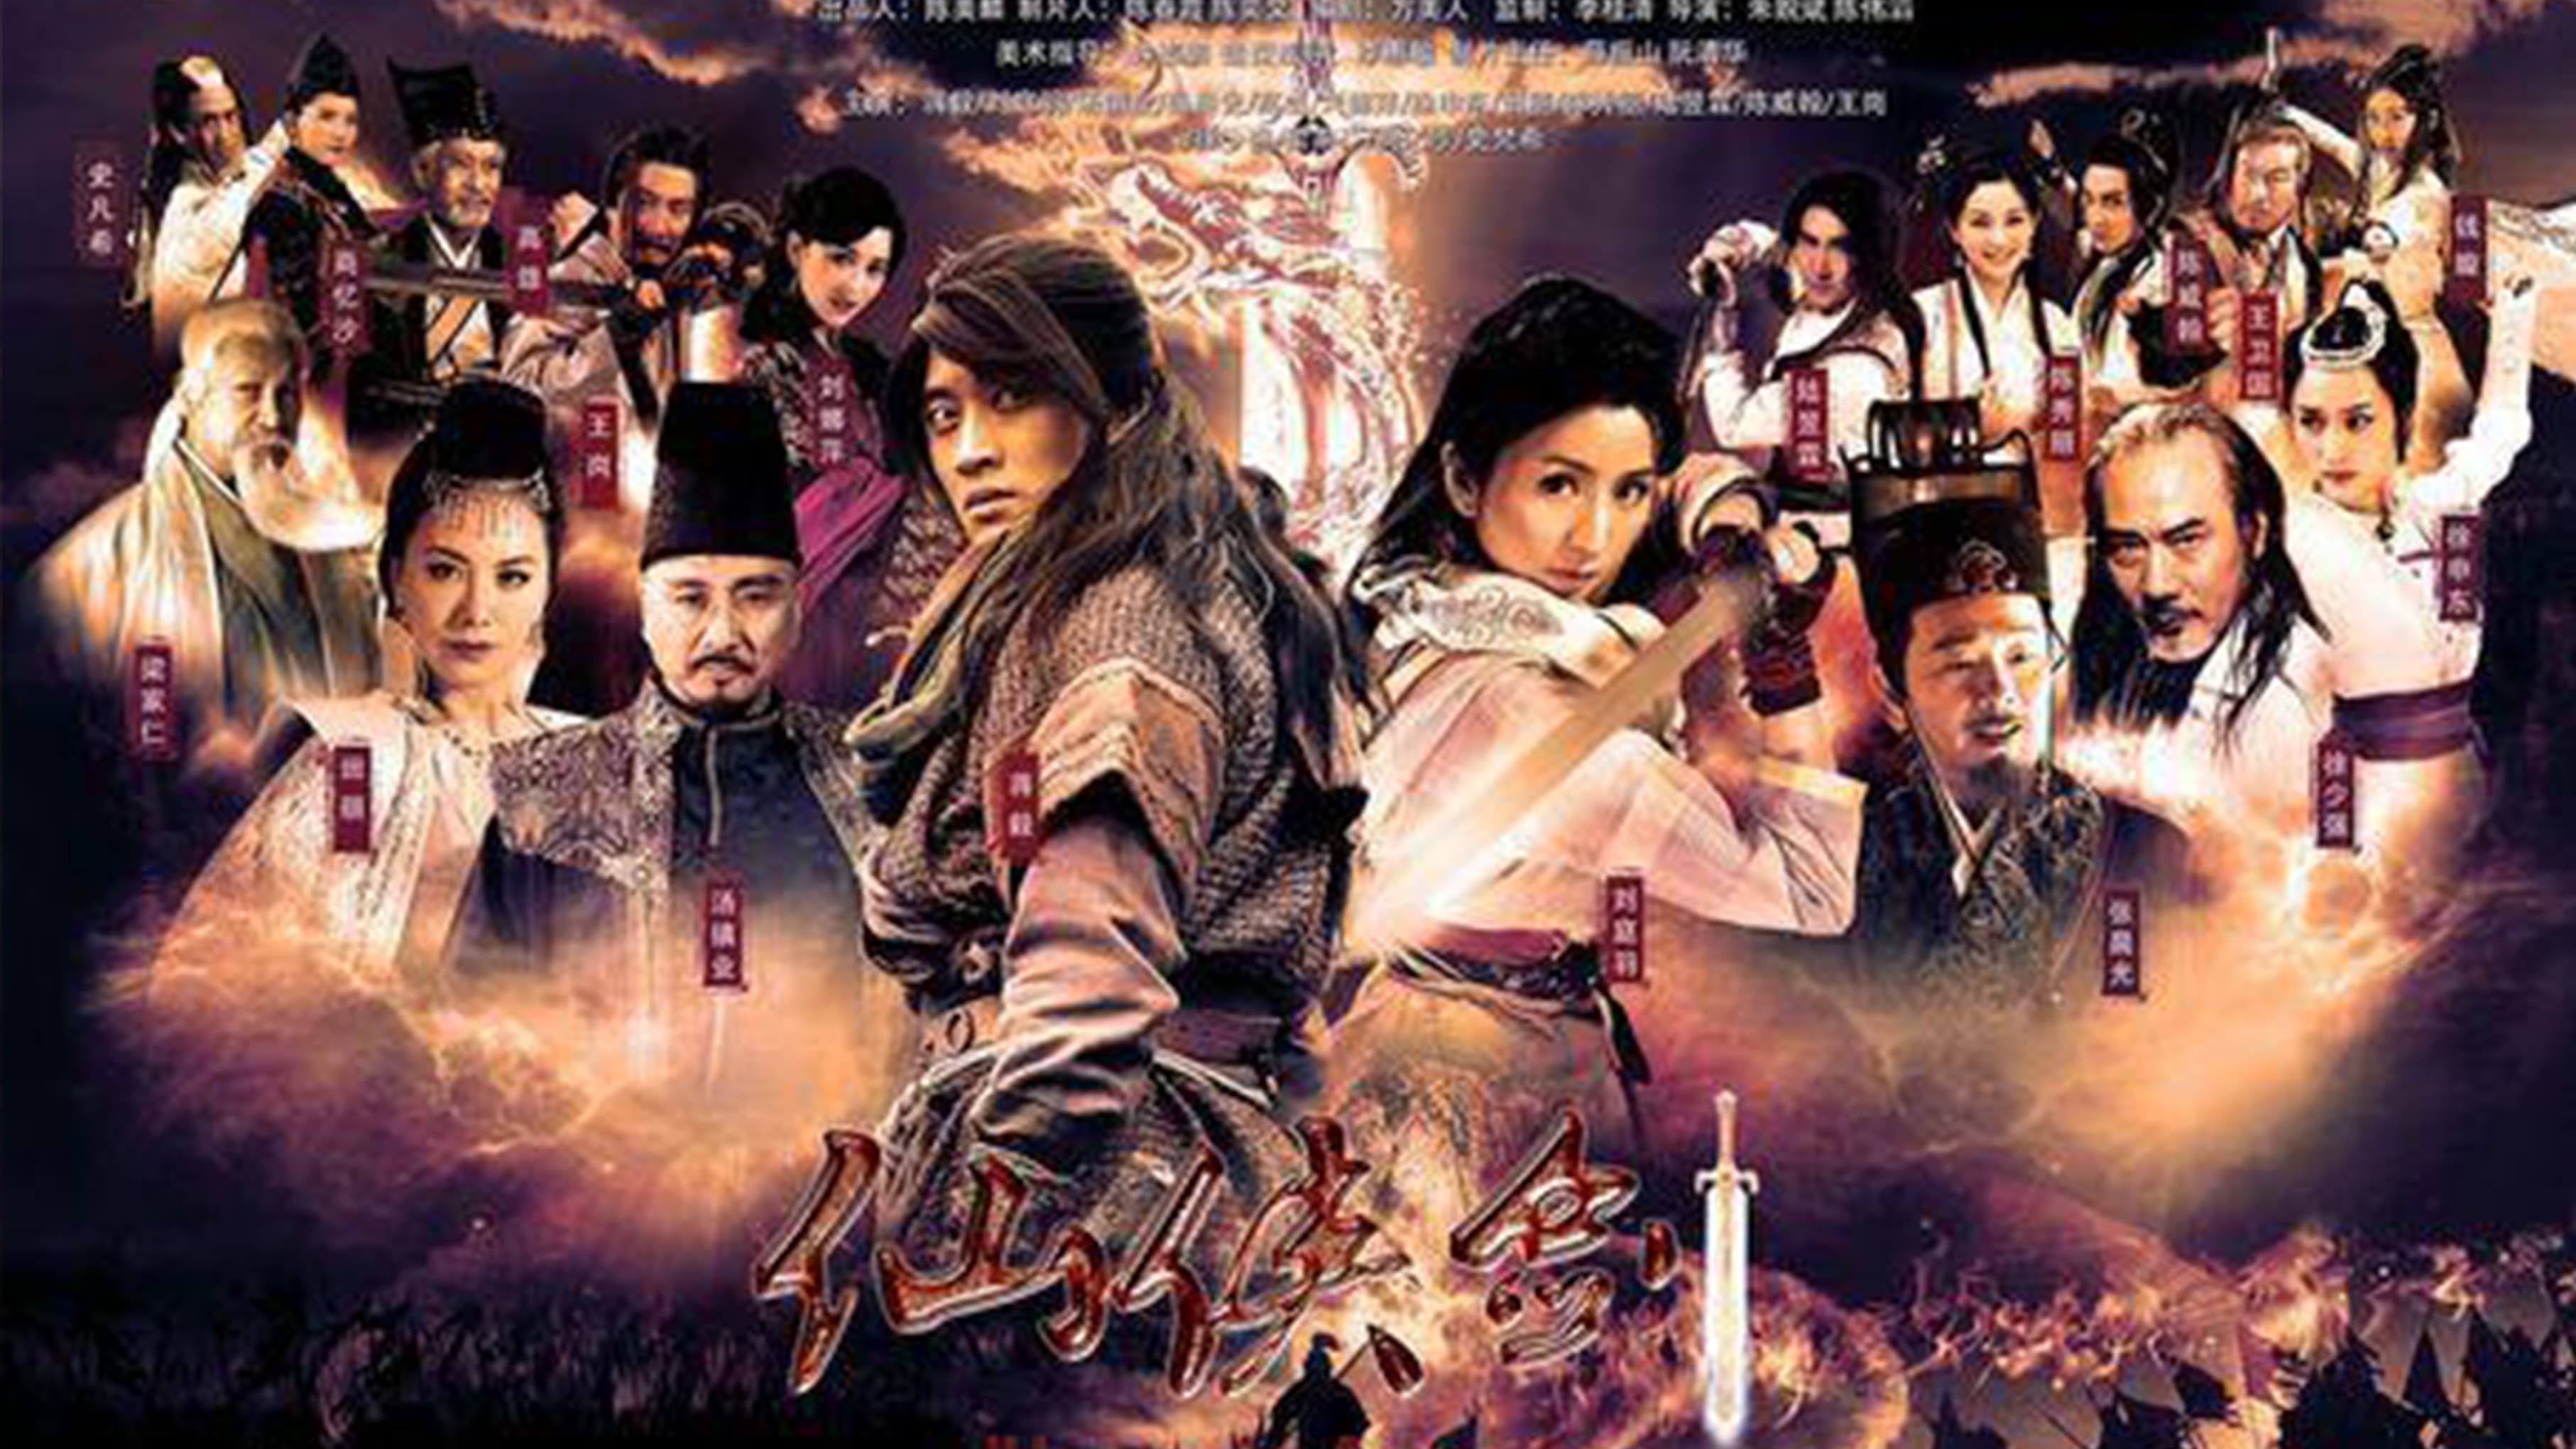 Poster Phim Tiên Hiệp Kiếm (Xian Xia Sword)